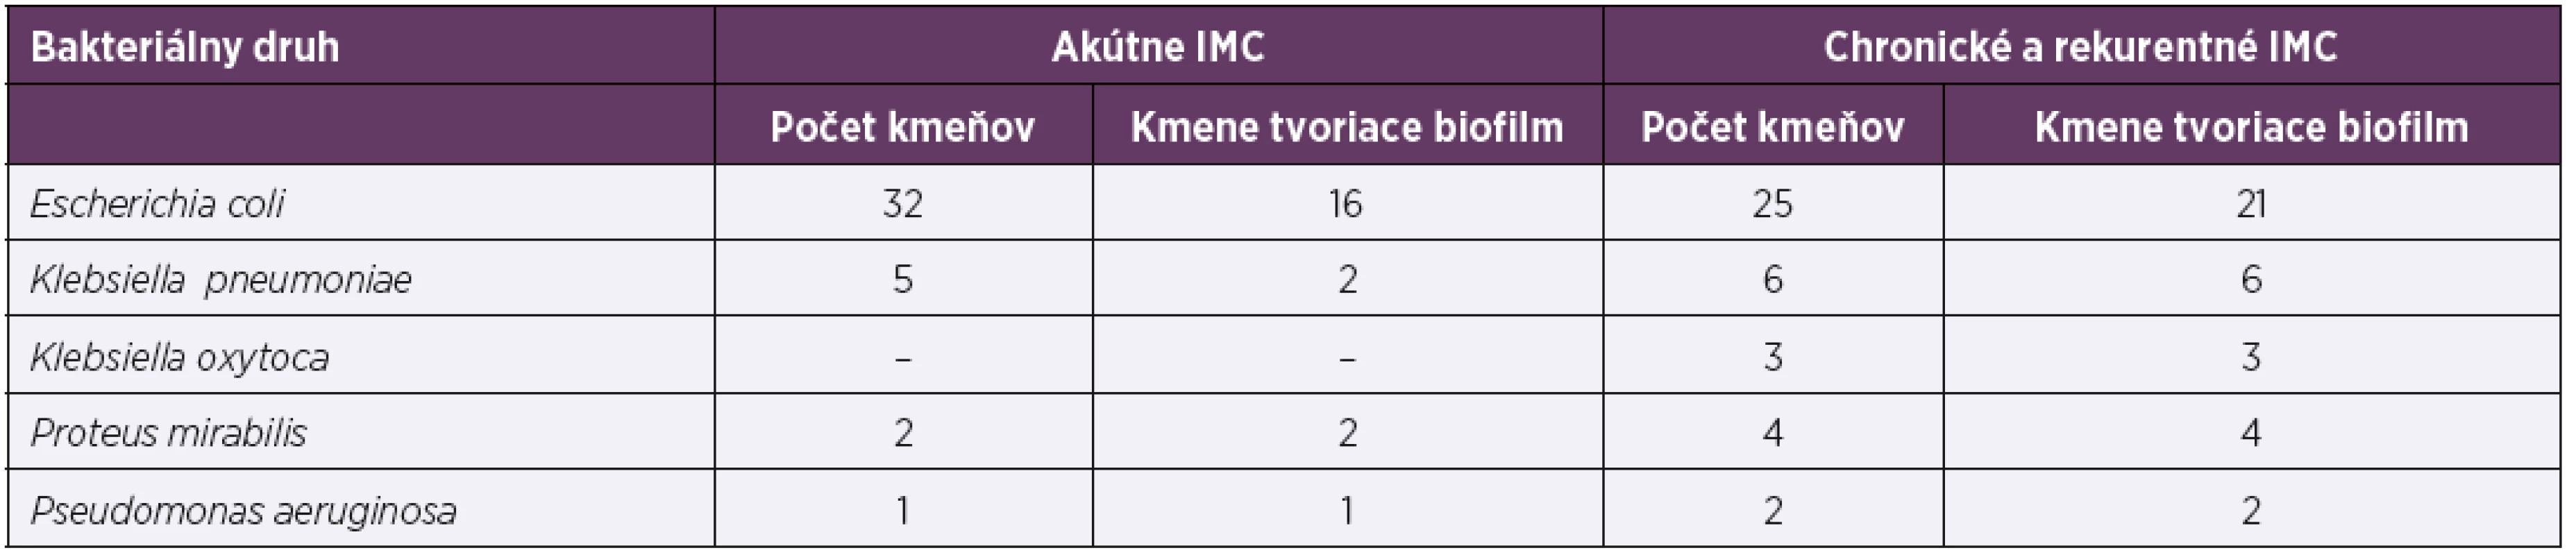 Druhové zastúpenie kmeňov v testovaných súboroch a ich schopnosť tvoriť biofilm<br>
Table 1. Microbial species in the tested groups and their ability to form biofilm